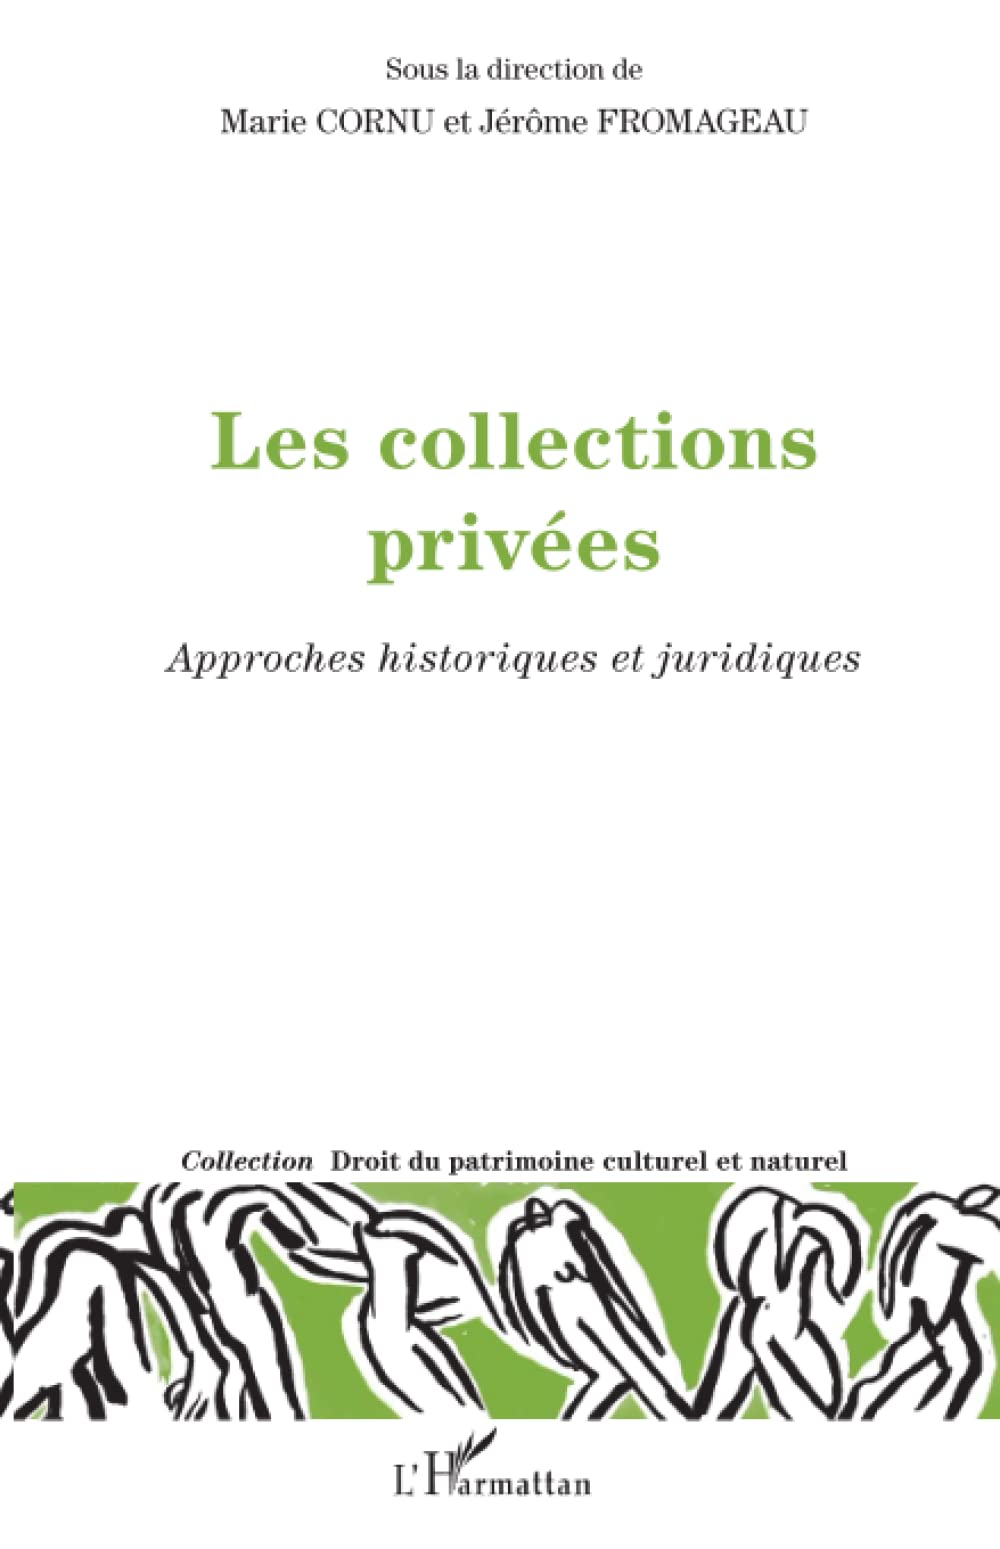 Les collections privées. Approches historiques et juridiques, 2022, 252 p.